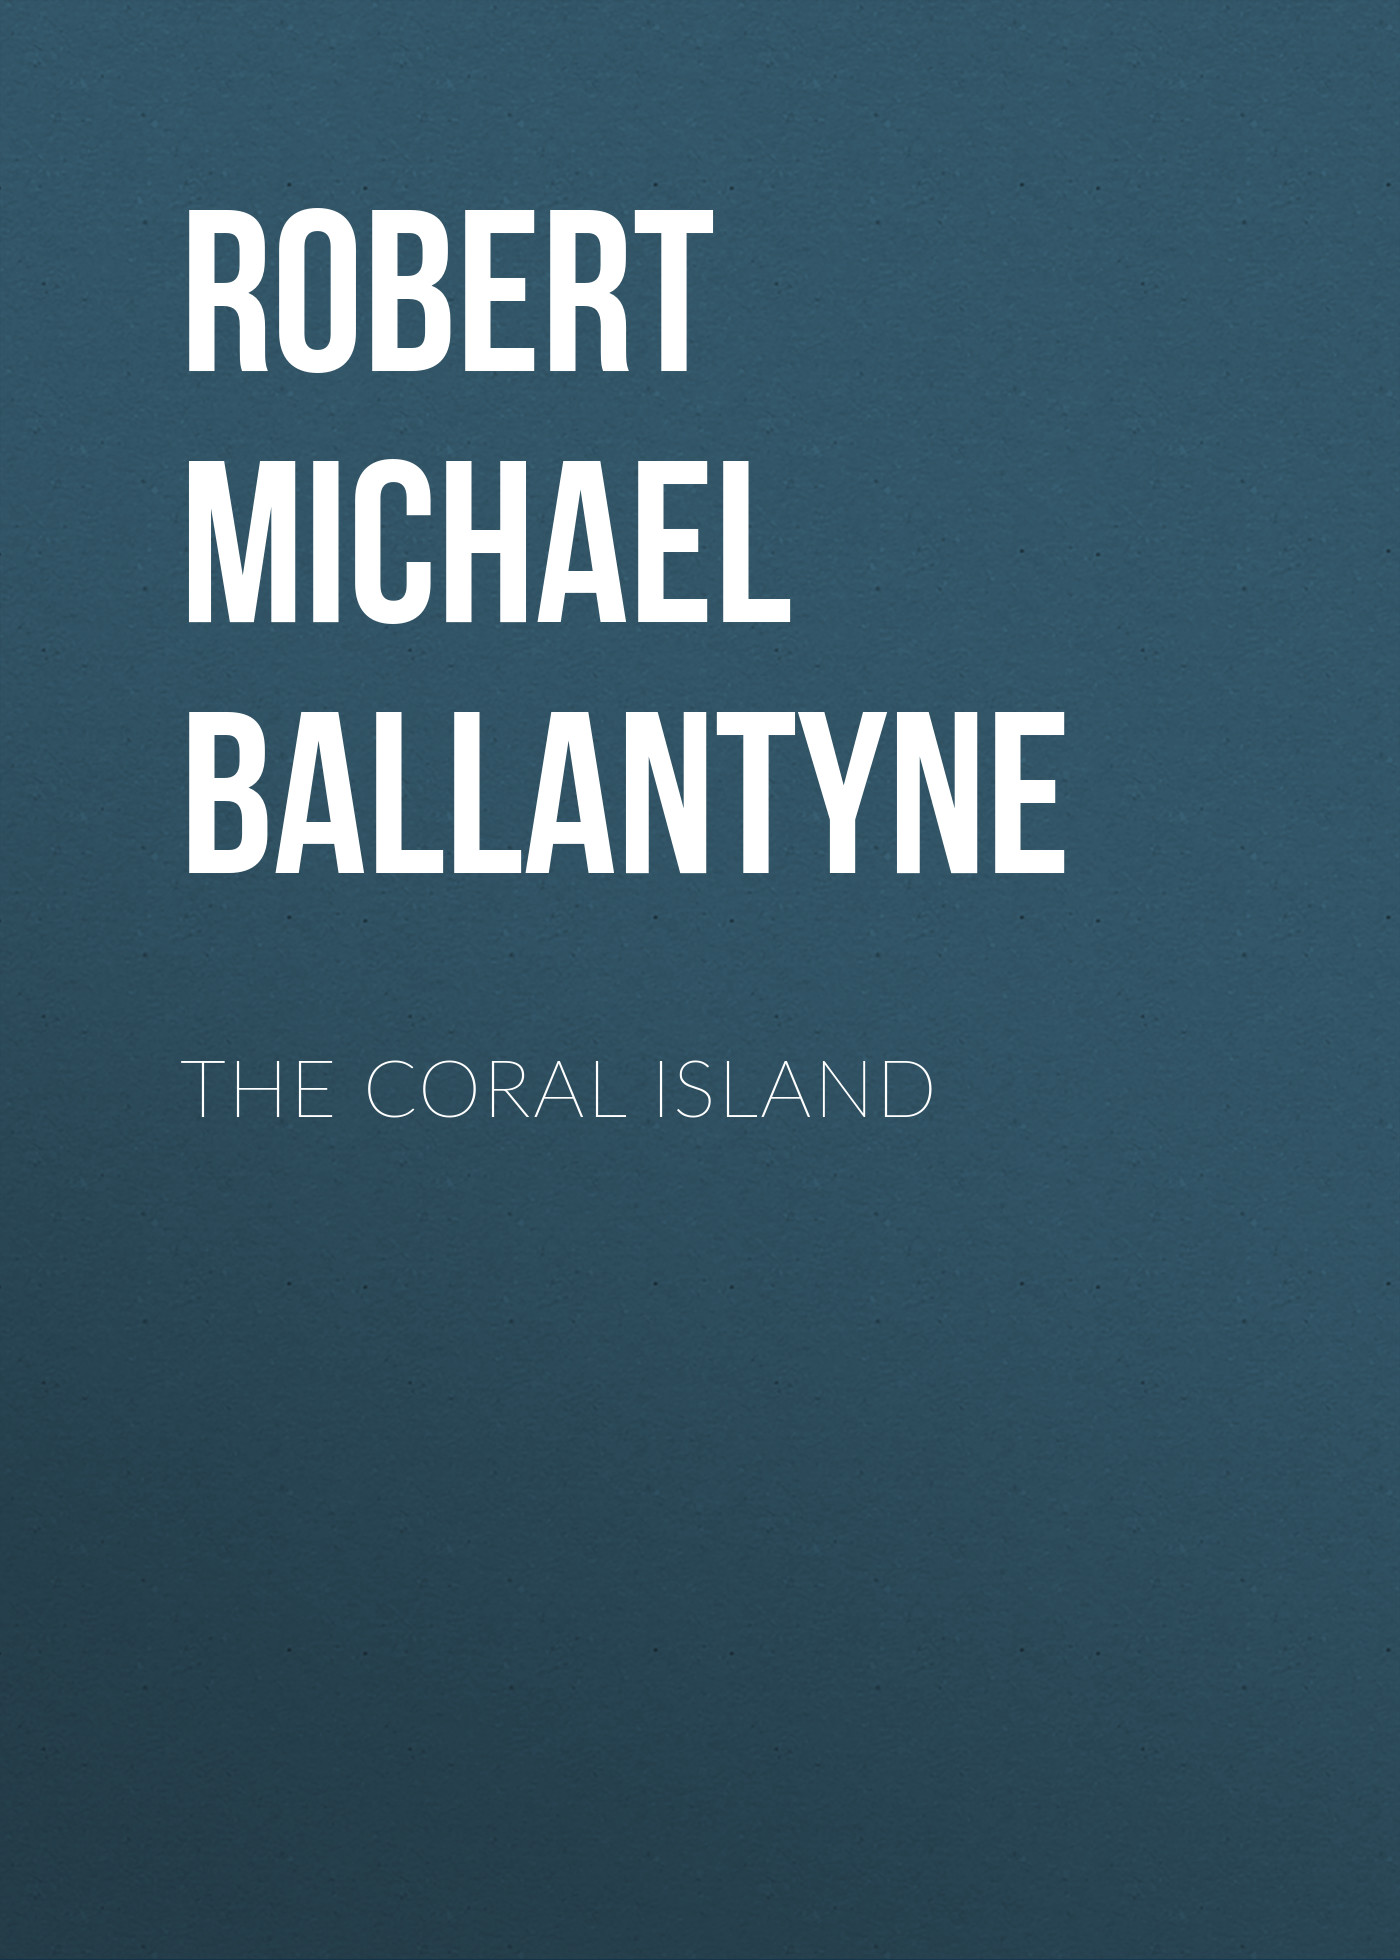 Книга The Coral Island из серии , созданная Robert Michael Ballantyne, может относится к жанру Детские приключения, Литература 19 века, Зарубежная старинная литература, Зарубежная классика, Зарубежные детские книги. Стоимость электронной книги The Coral Island с идентификатором 36095181 составляет 0 руб.